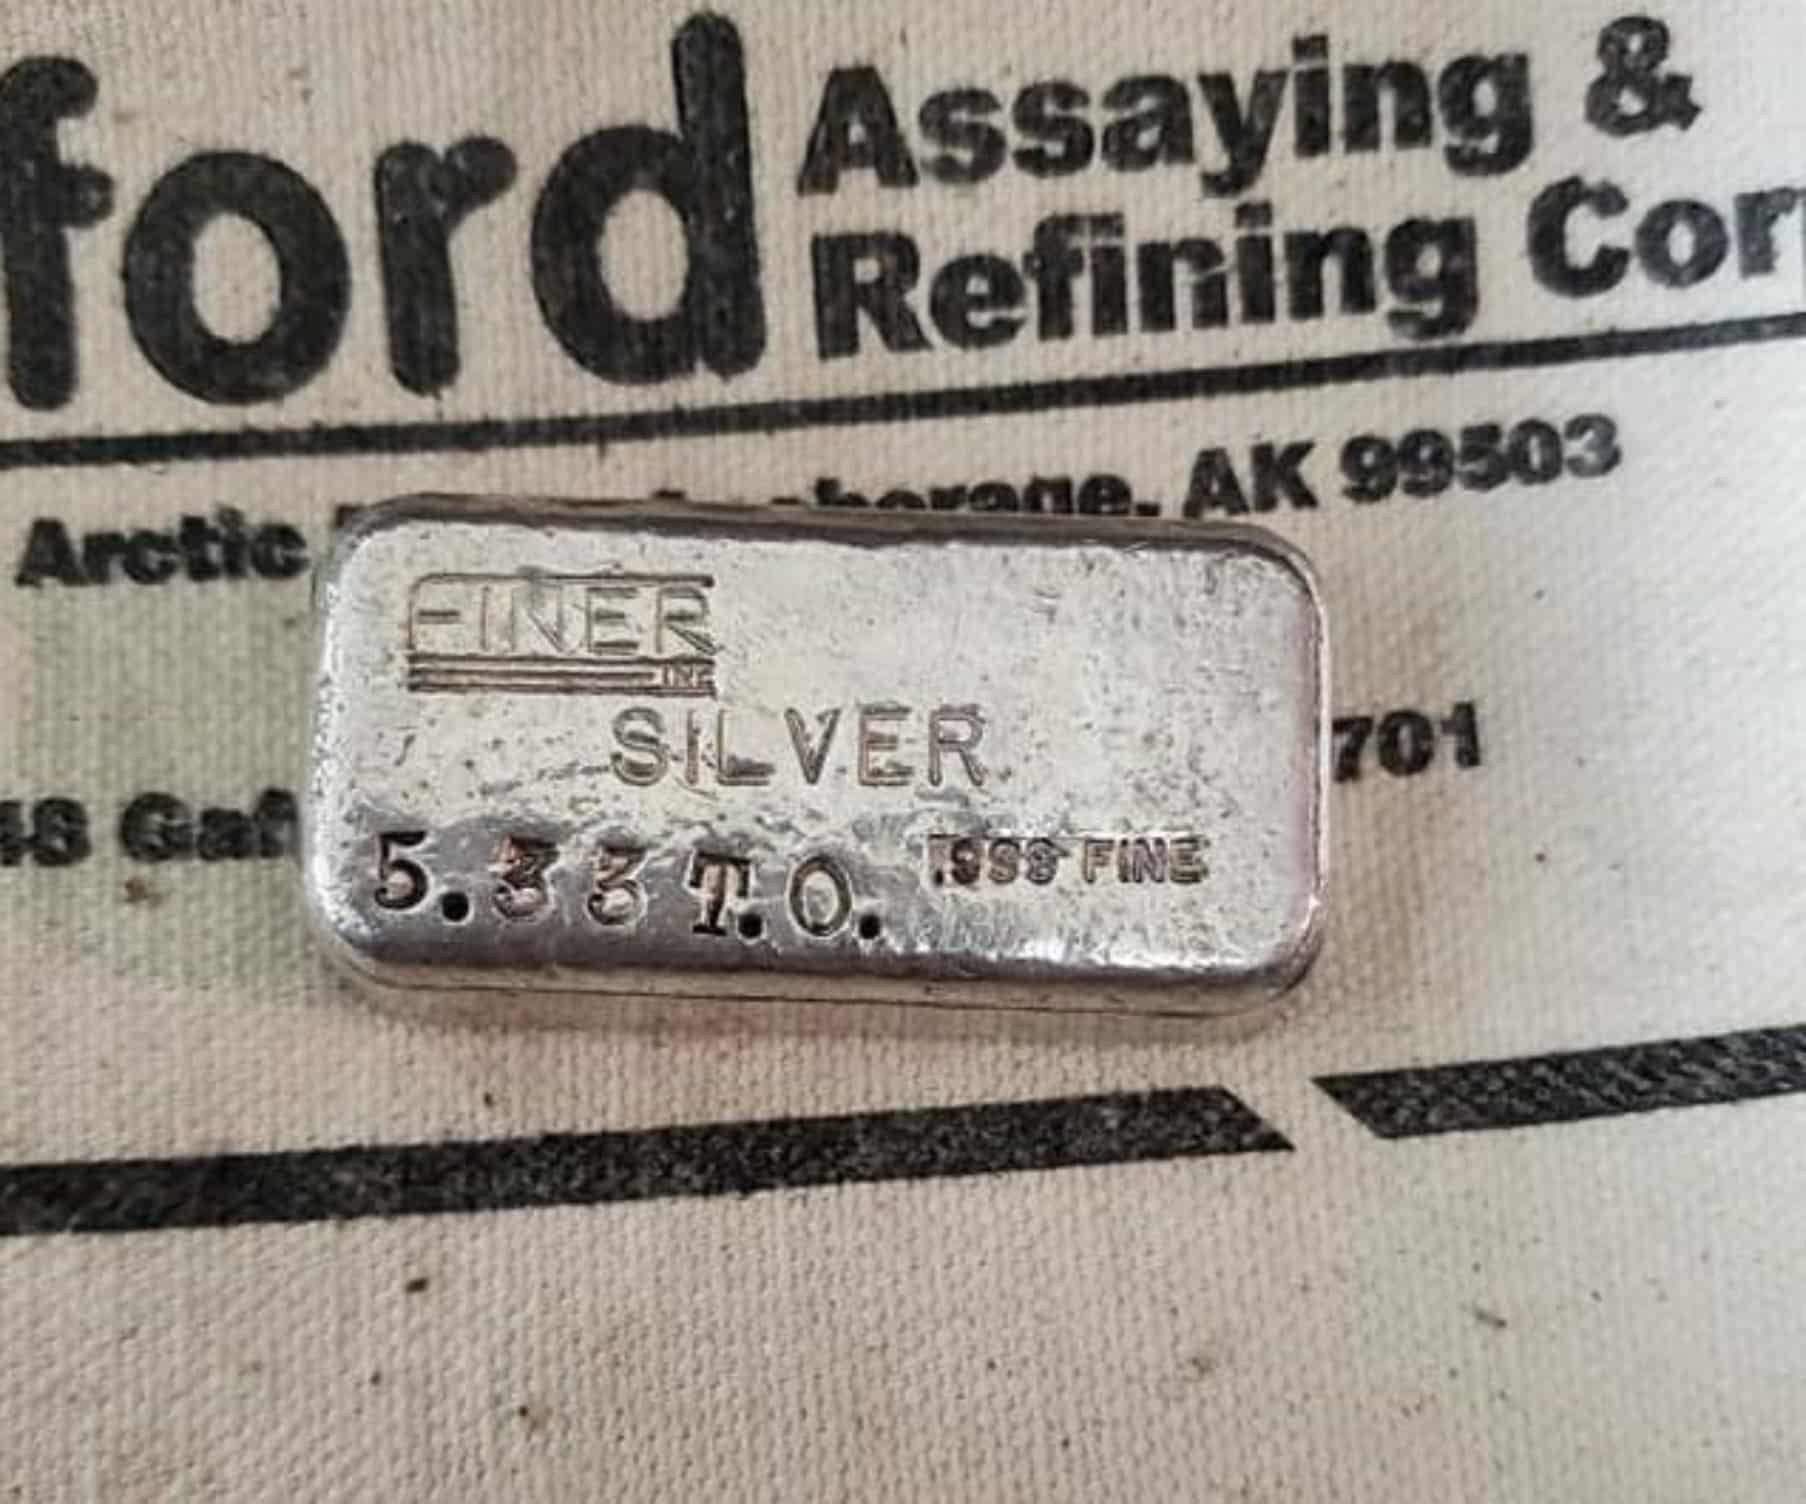 Finer 5.33 vintage silver bar front